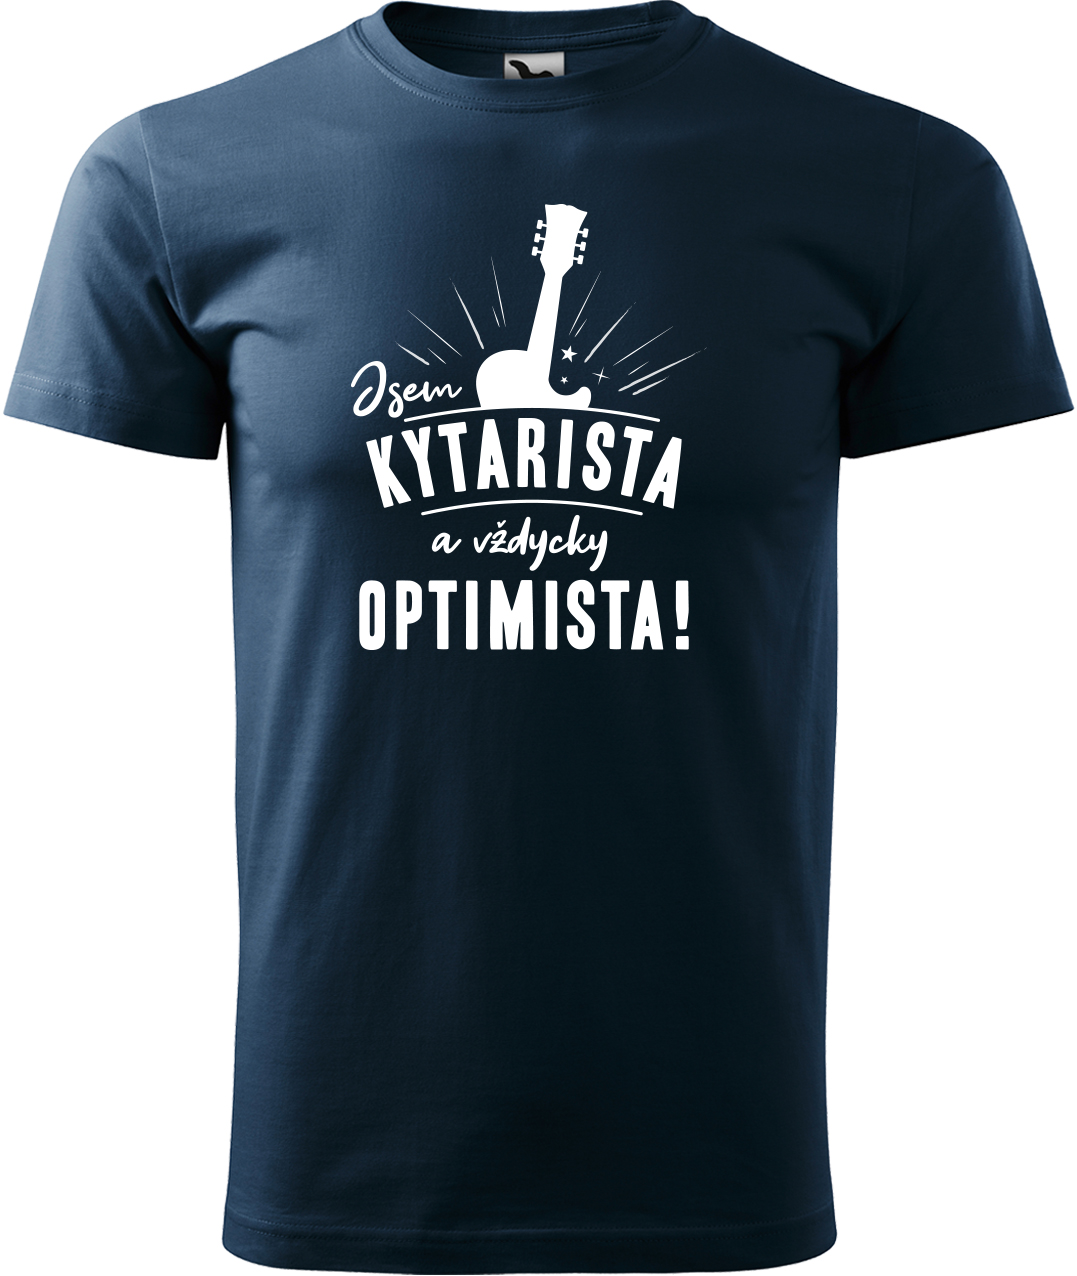 Pánské tričko s kytarou - Kytarista optimista Velikost: L, Barva: Námořní modrá (02), Střih: pánský